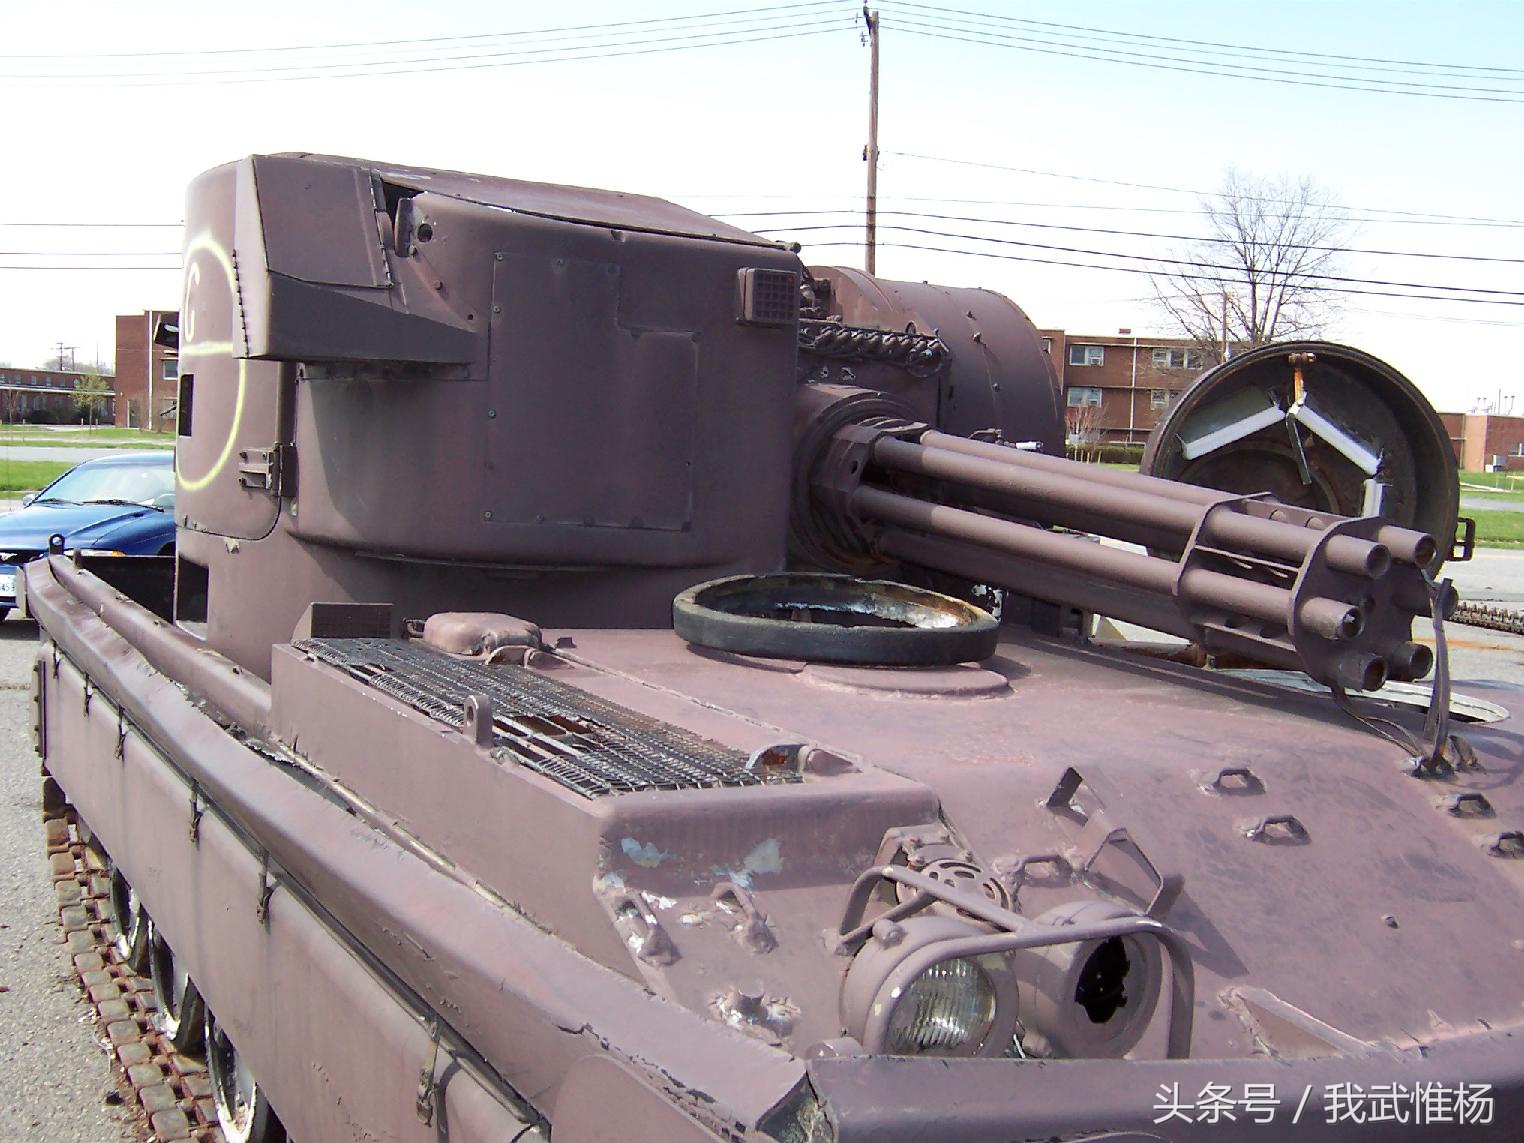 是二战以来口径最大加特林炮,其口径为37毫米